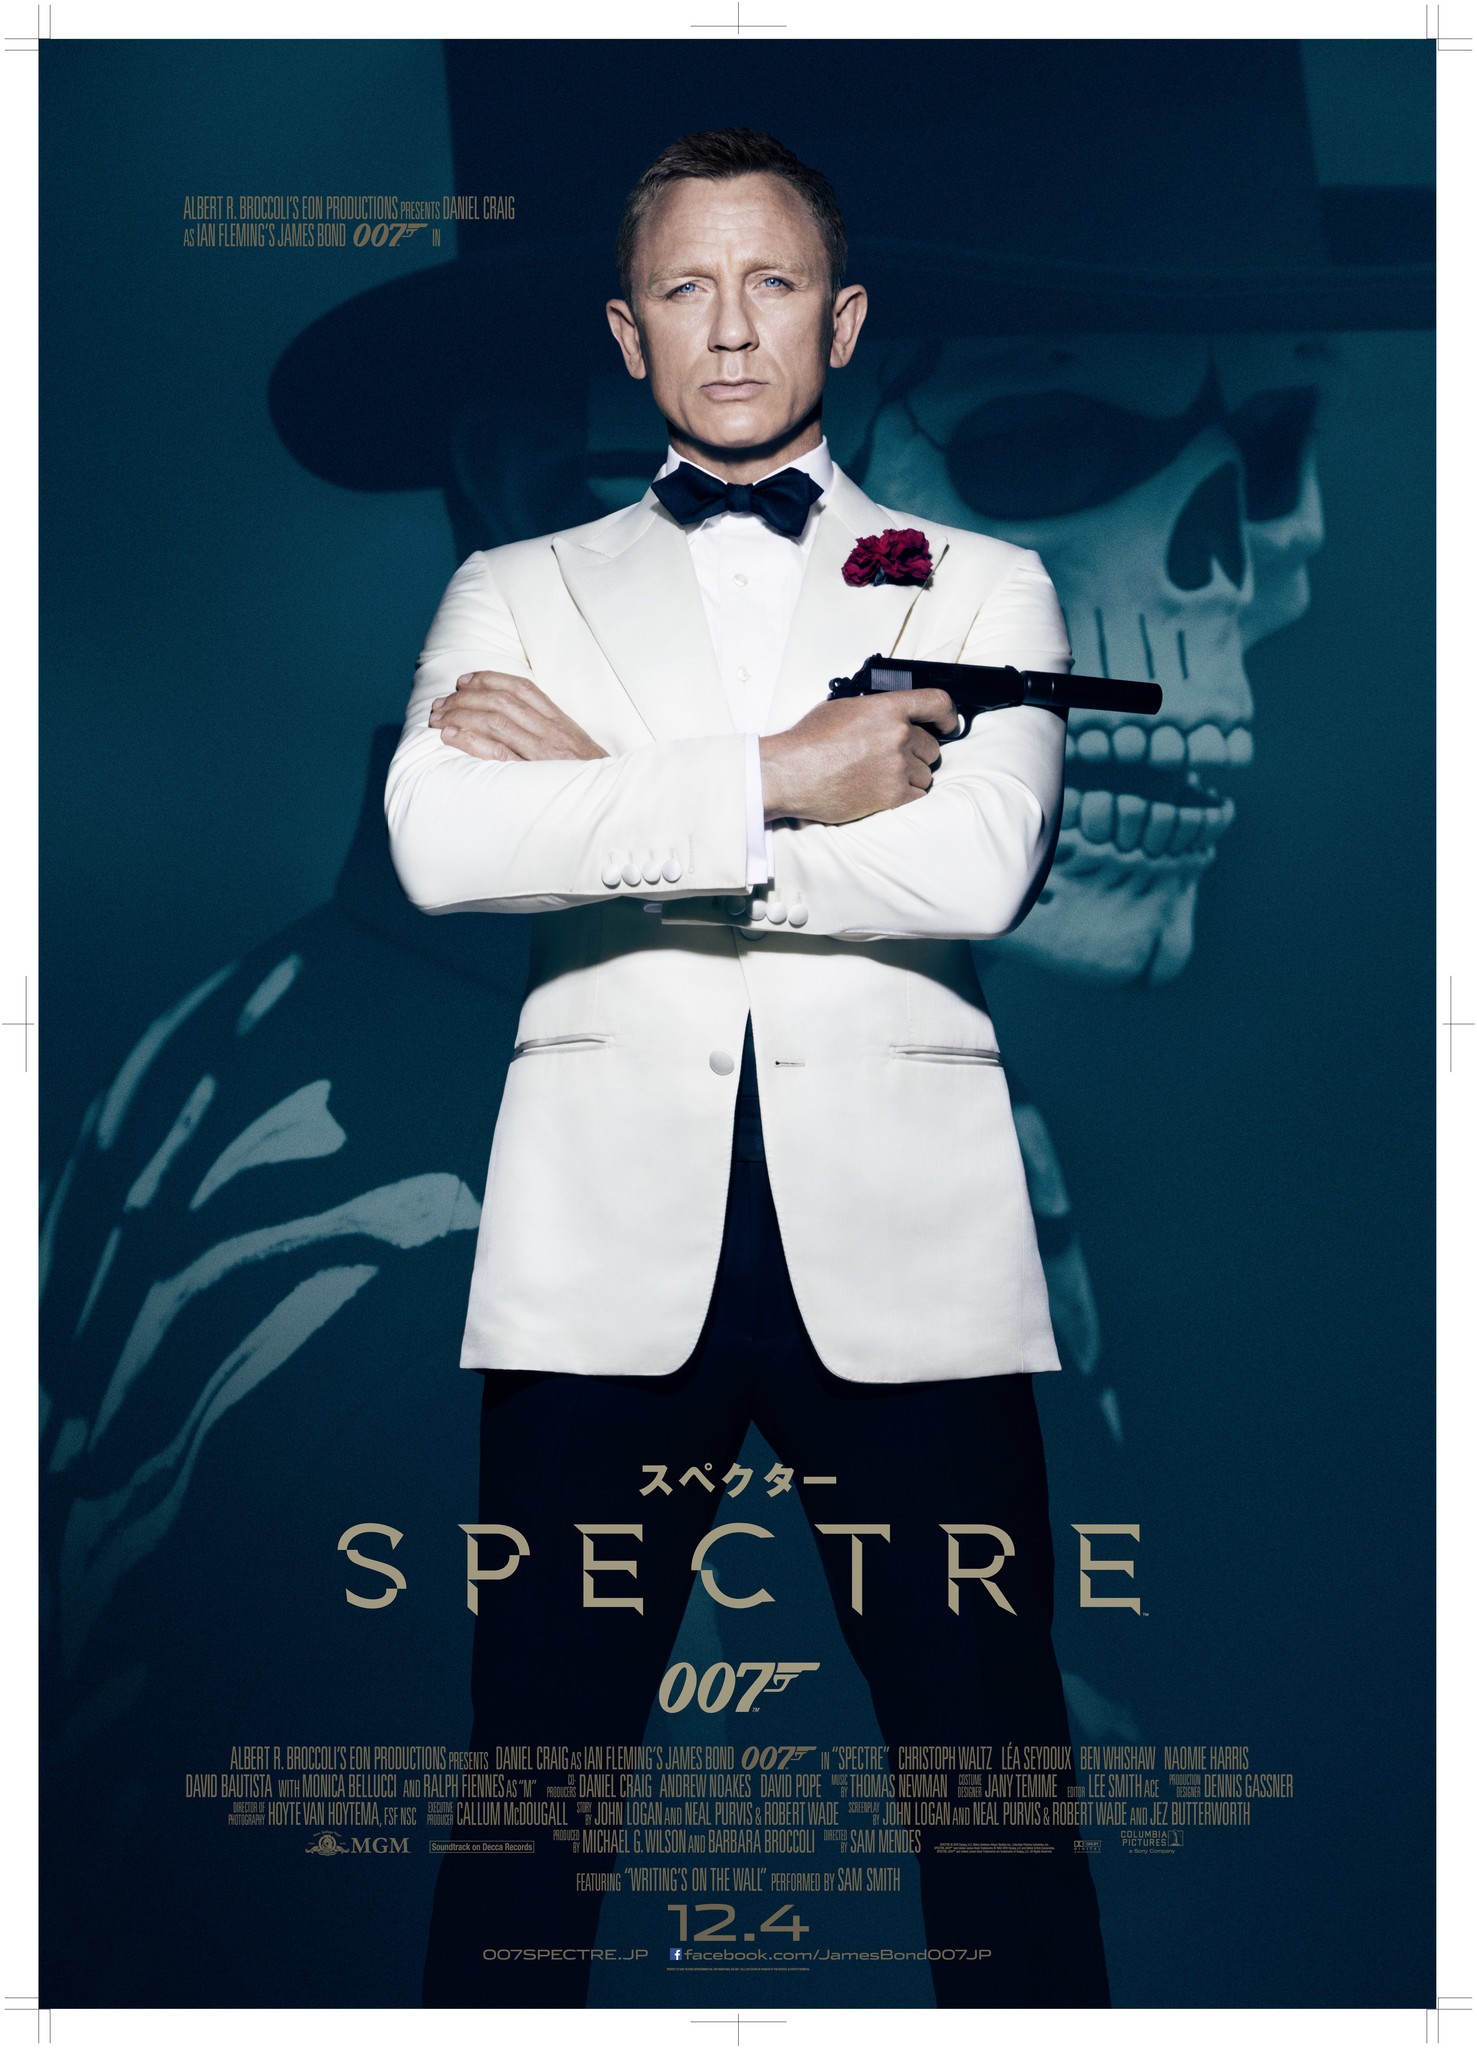 銀座 ソニービルで007シリーズ最新作を体感しよう！映画『007